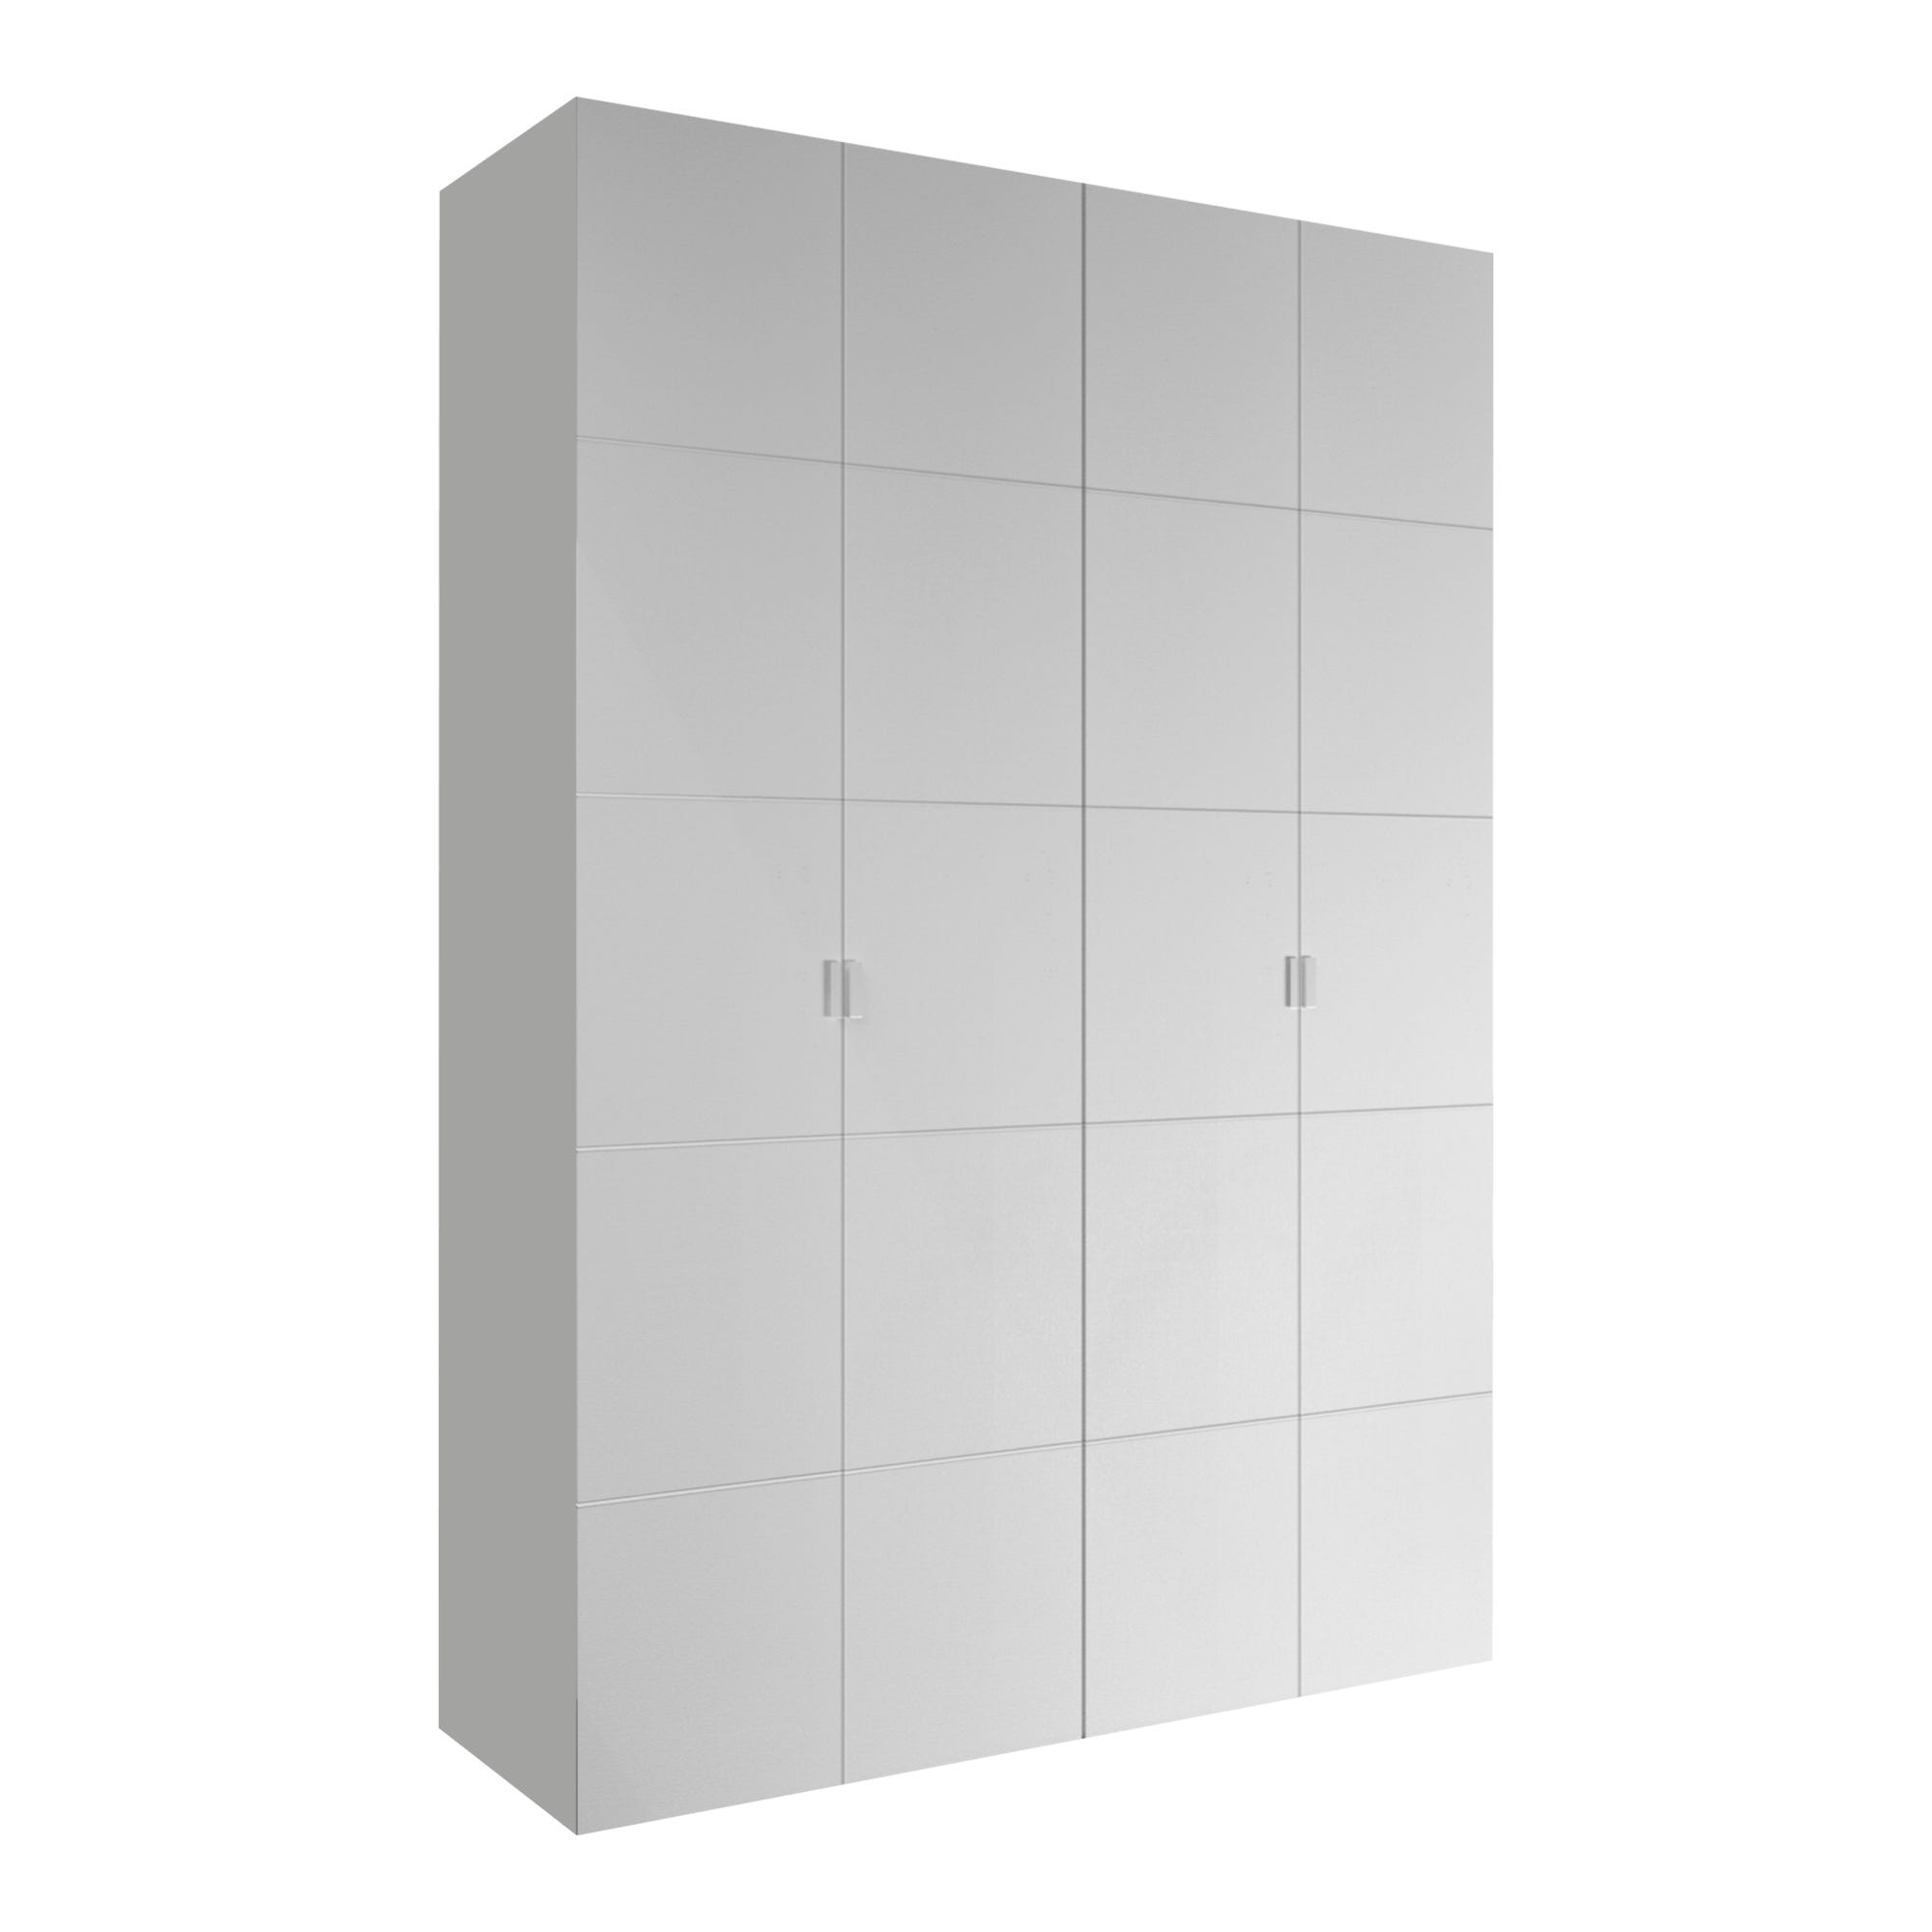 Armario 2 puertas abatible sde madera en color blanco lacado (36676)